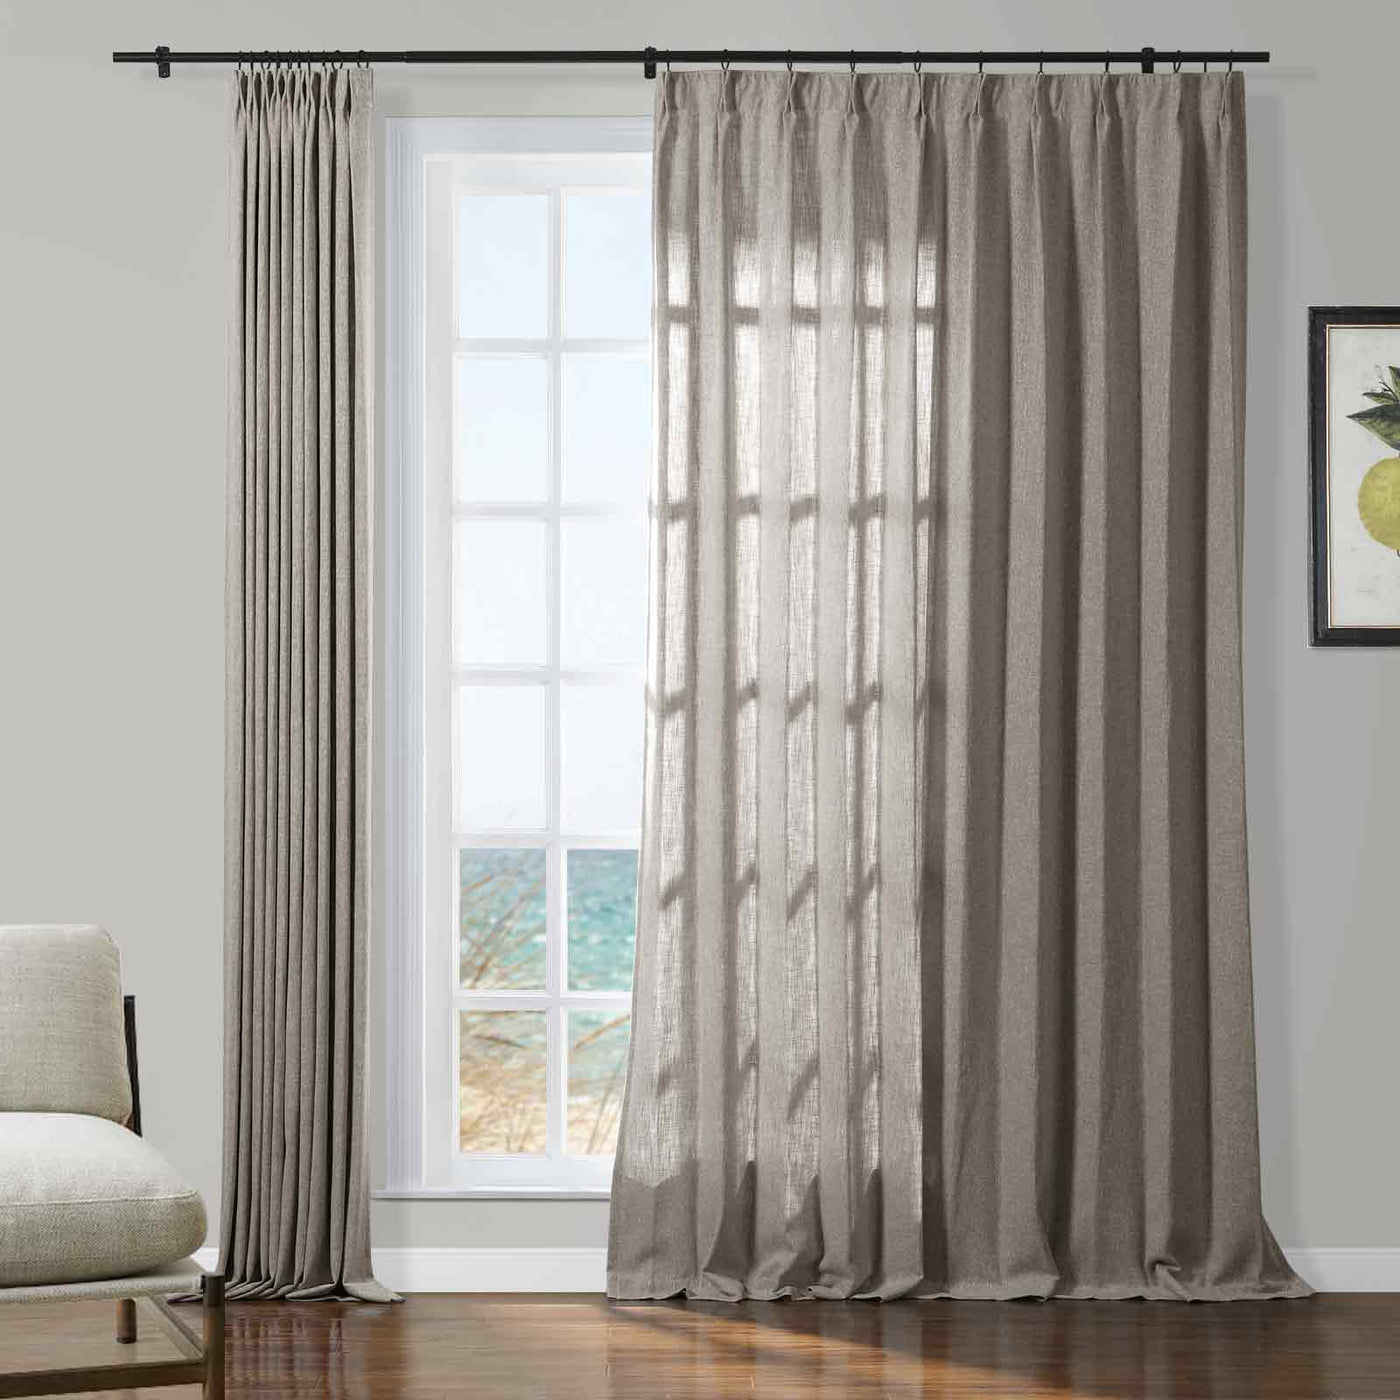 Sarai Textured Metallic Cotton Blend Curtain Pleated